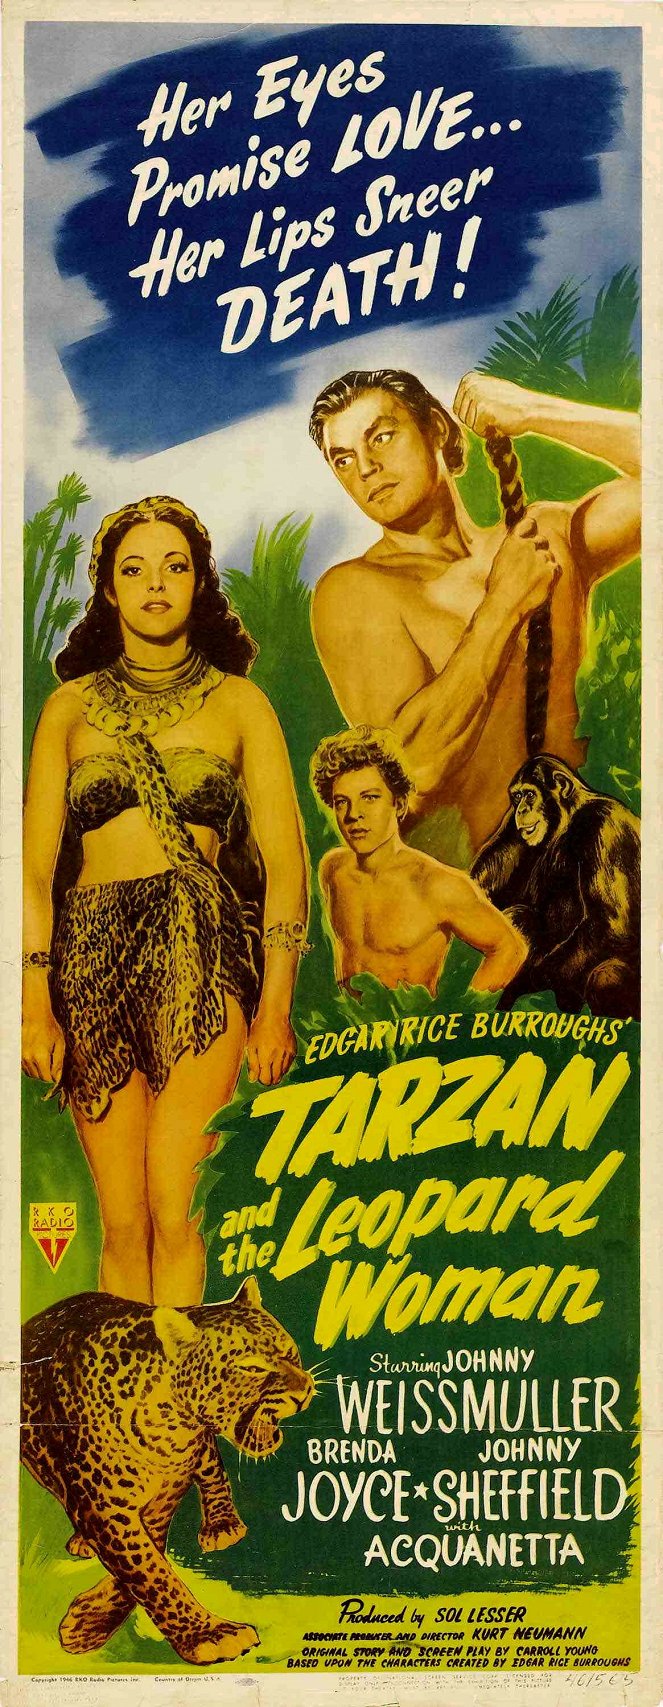 Tarzán y la mujer leopardo - Carteles